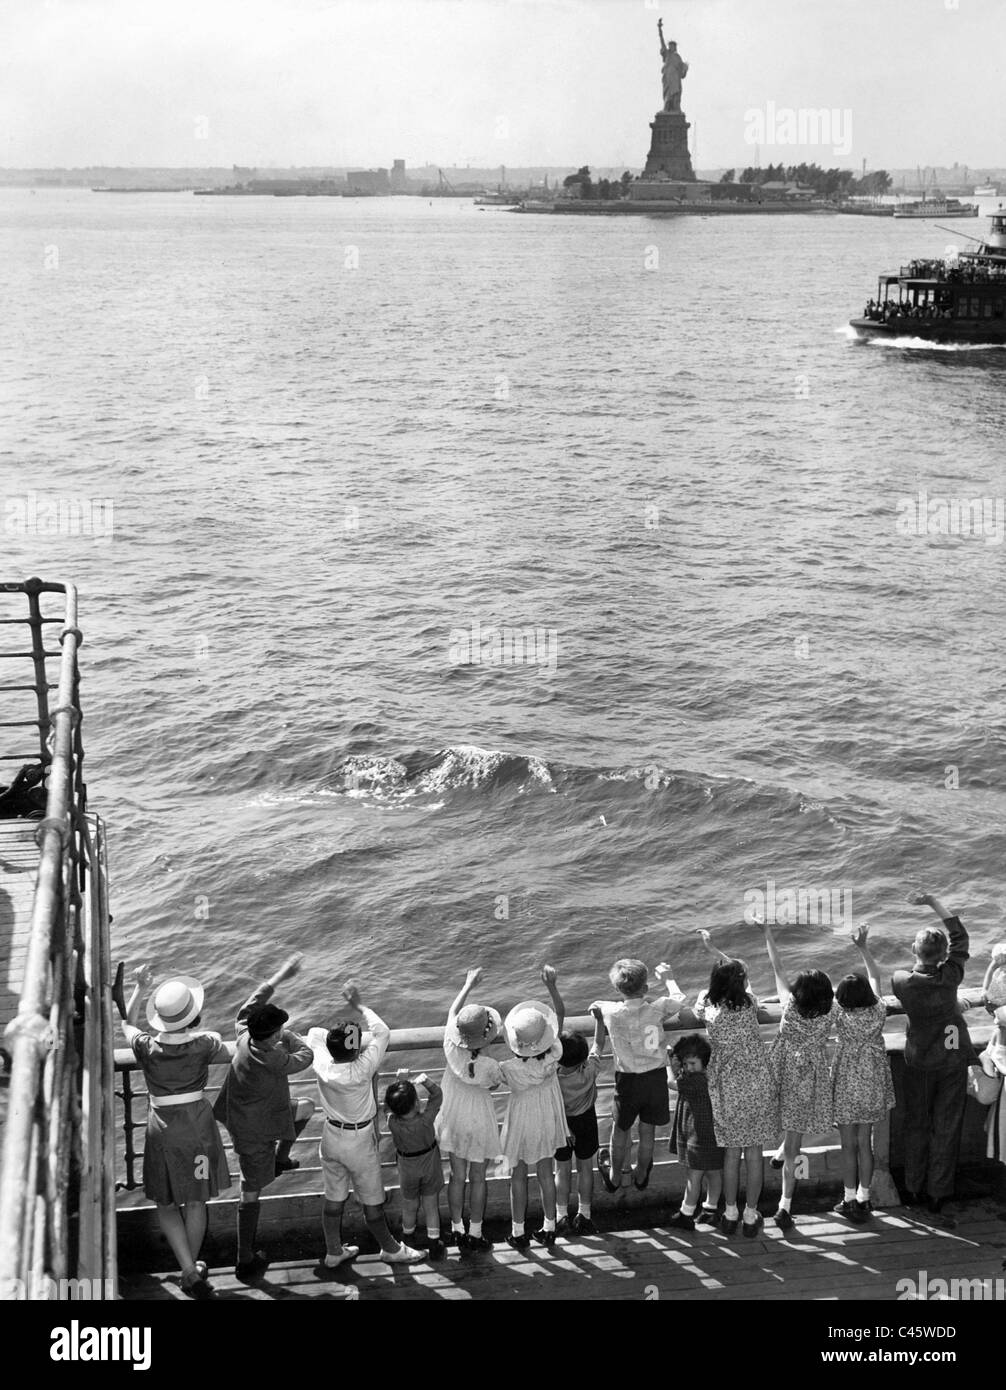 La inmigración a los Estados Unidos, 1940 Foto de stock